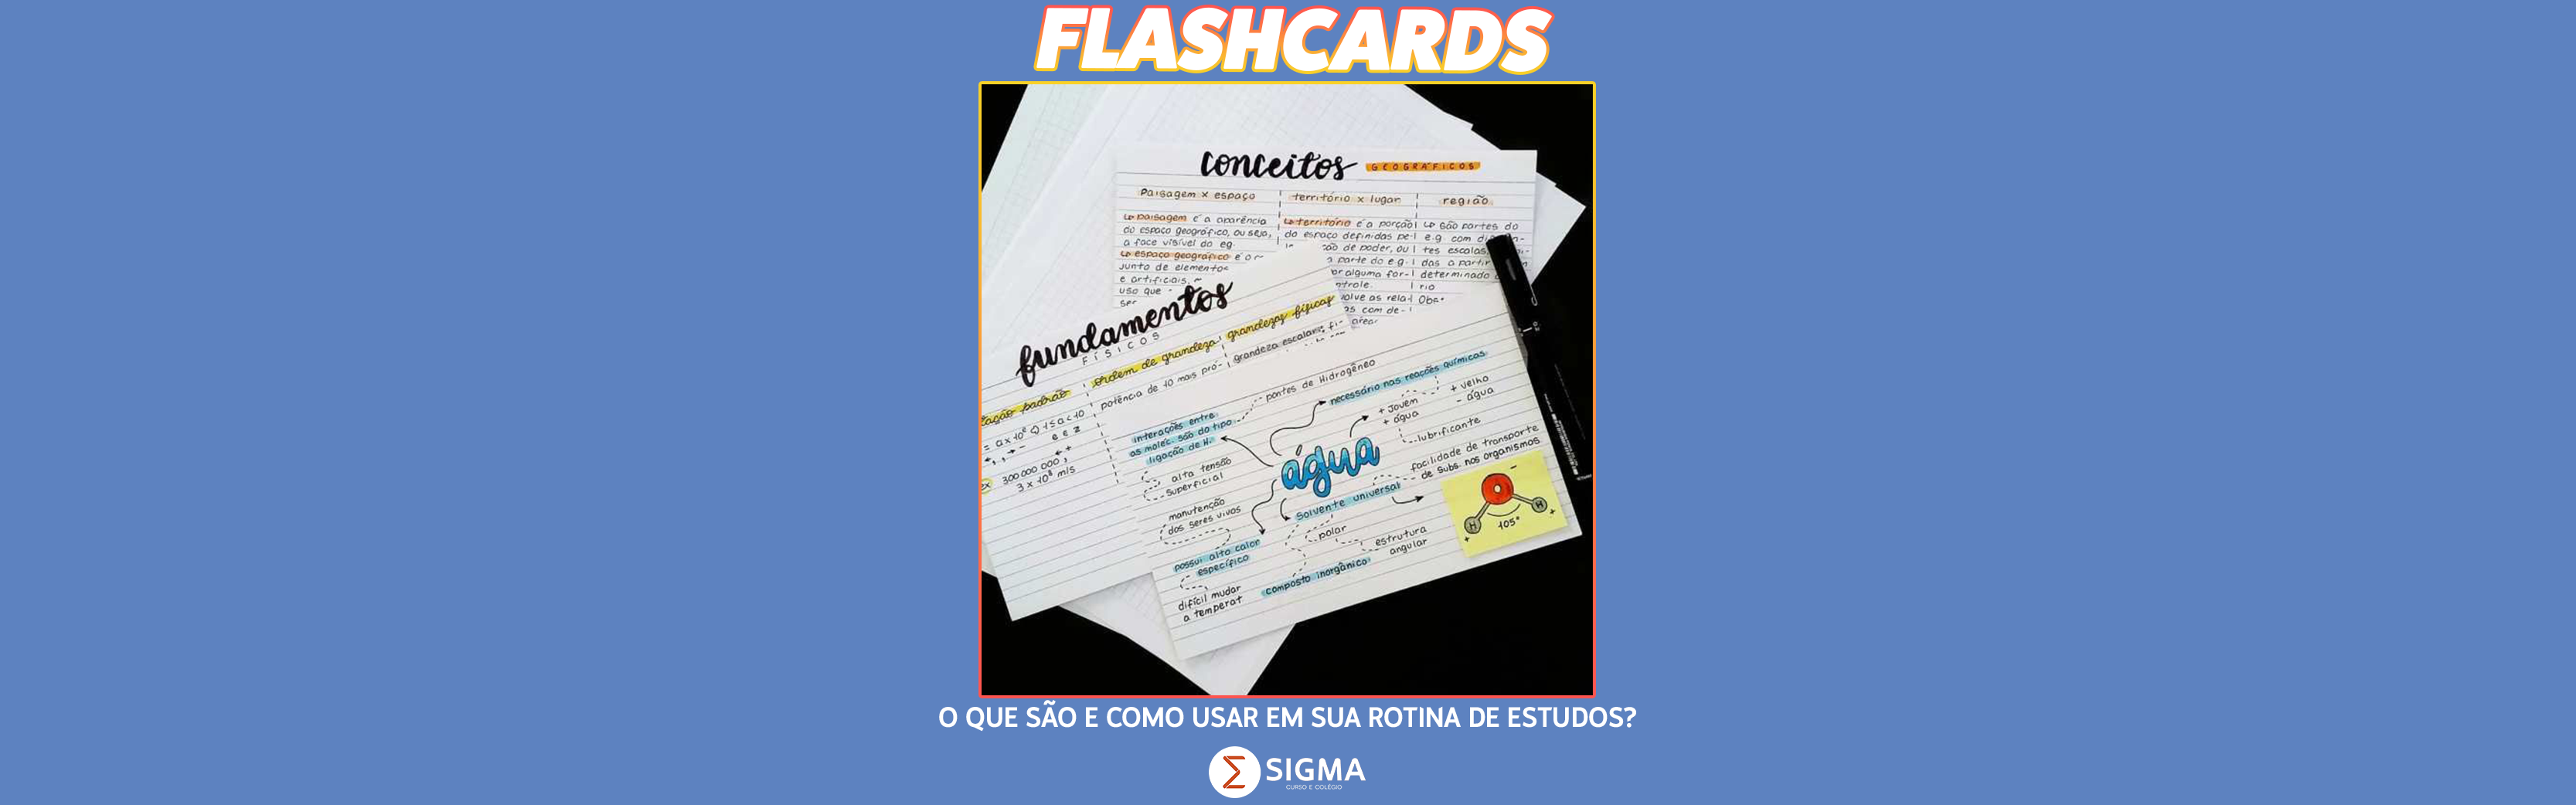 O que são flashcards e como usar?